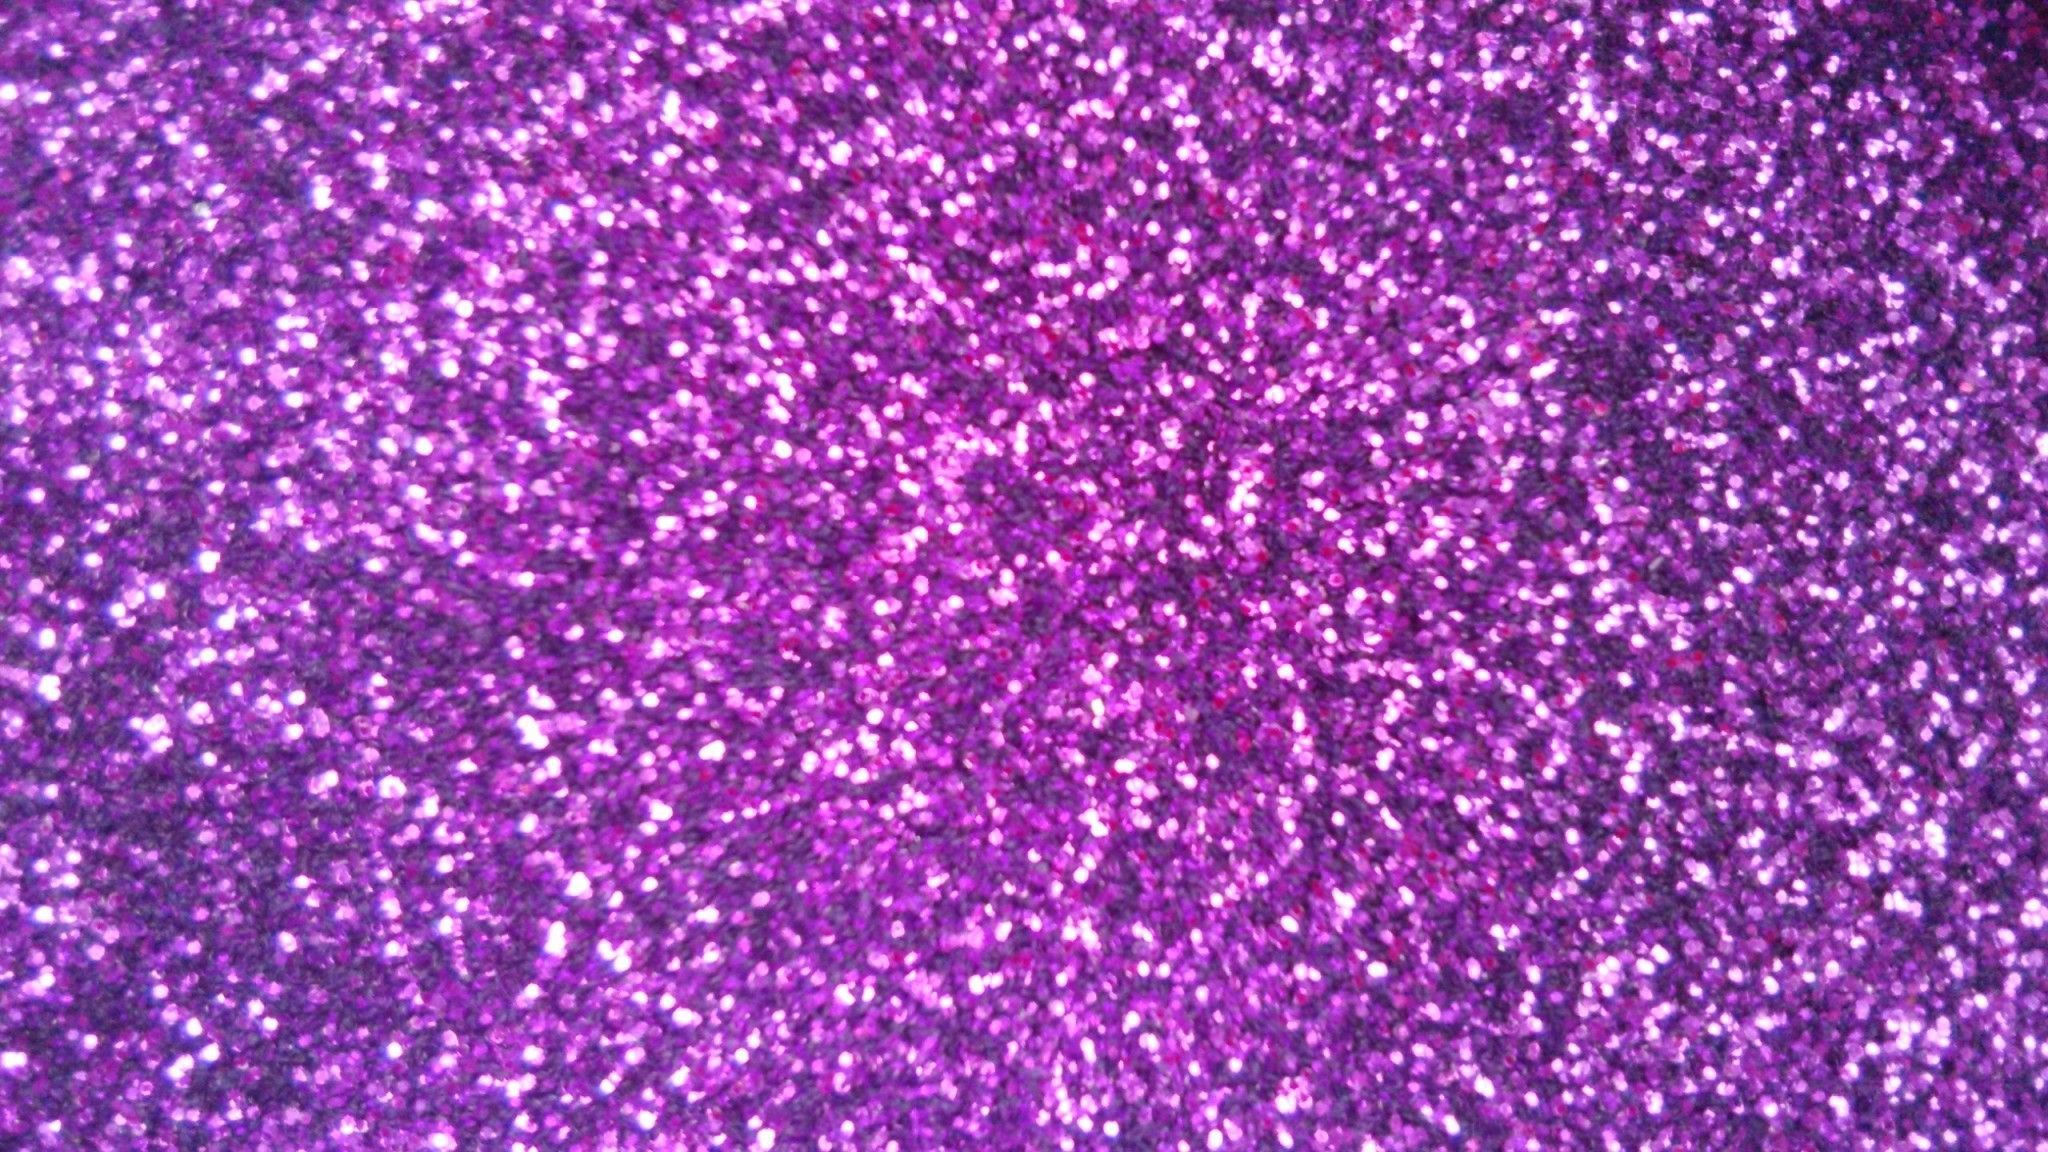 High Resolution Pink Glitter Wallpaper HD. Pink glitter wallpaper, Glitter wallpaper, Purple glitter wallpaper